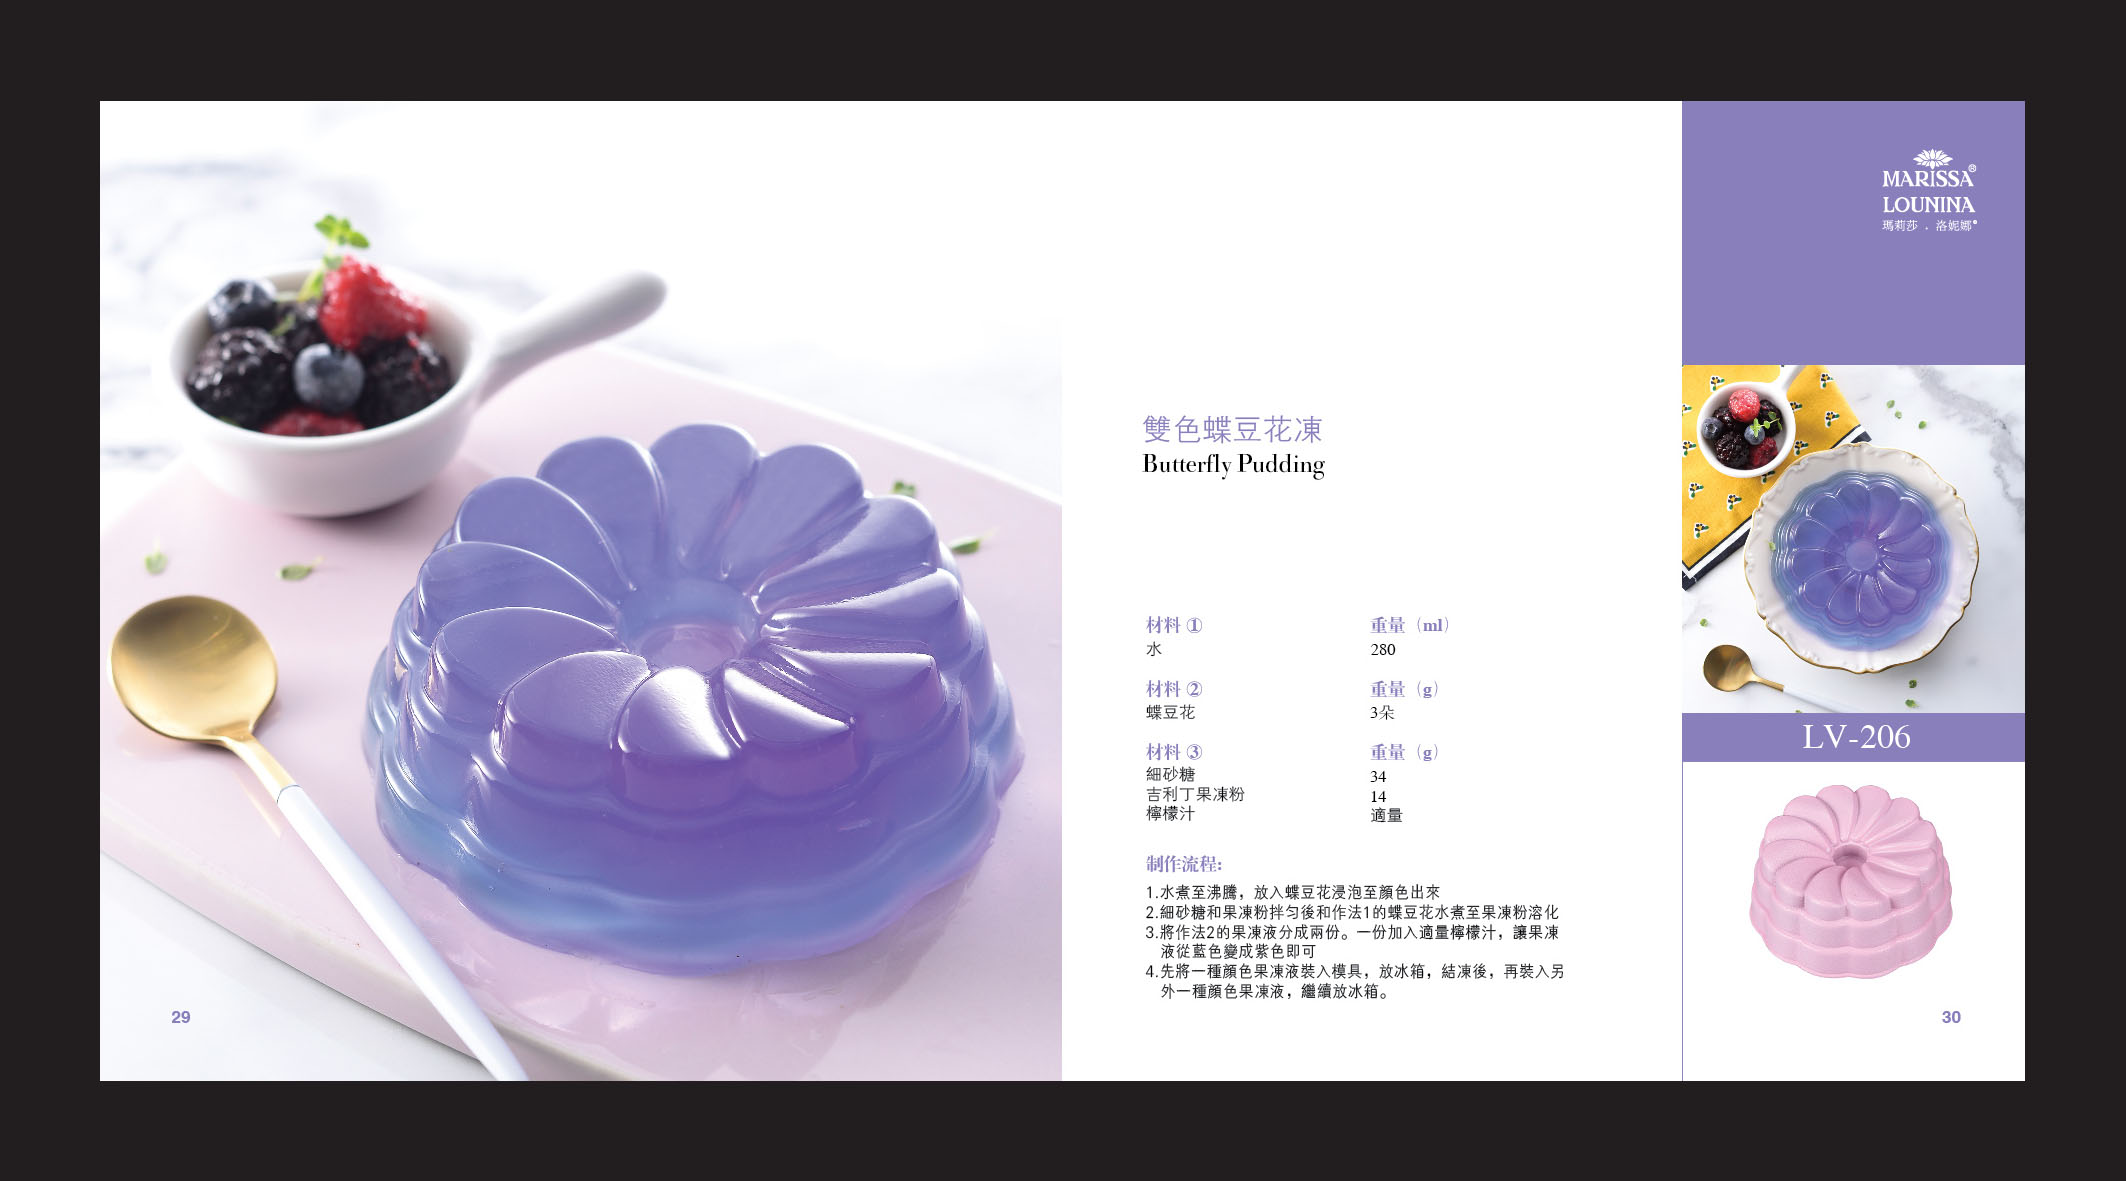 吕一斌 蛋糕模菜谱-206.jpg